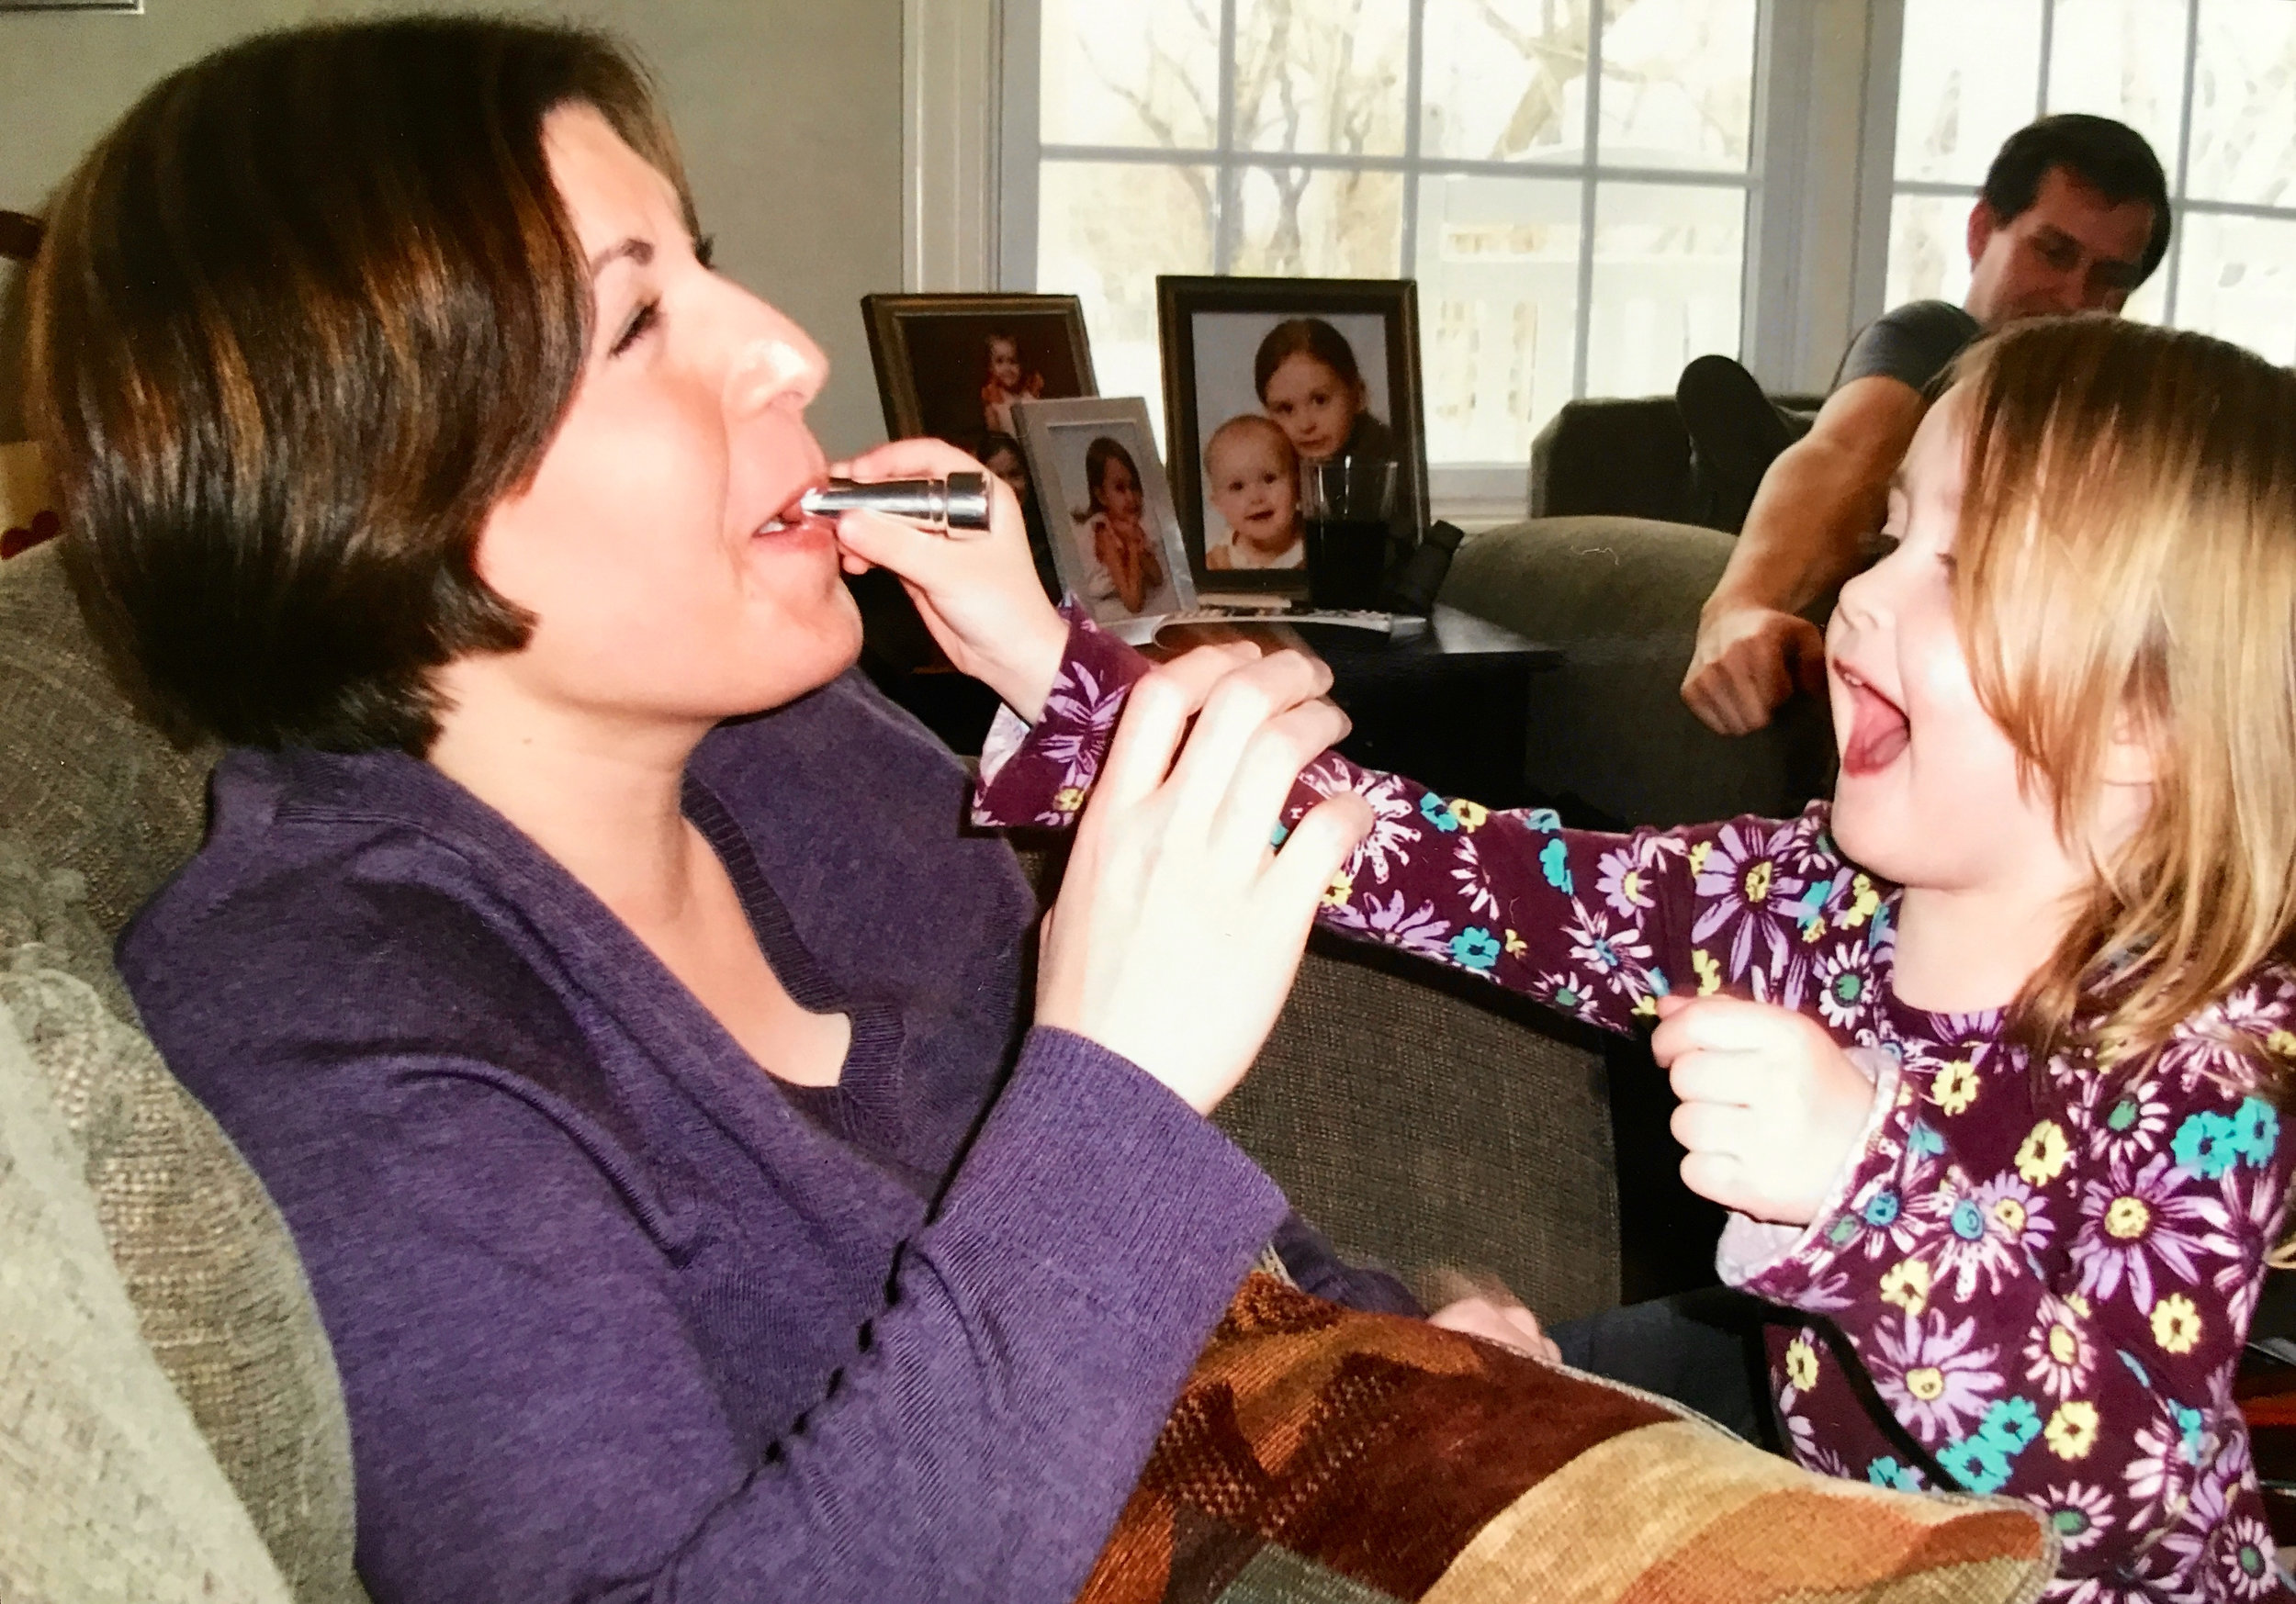 My friend’s daughter Aurora feeding me lipstick!